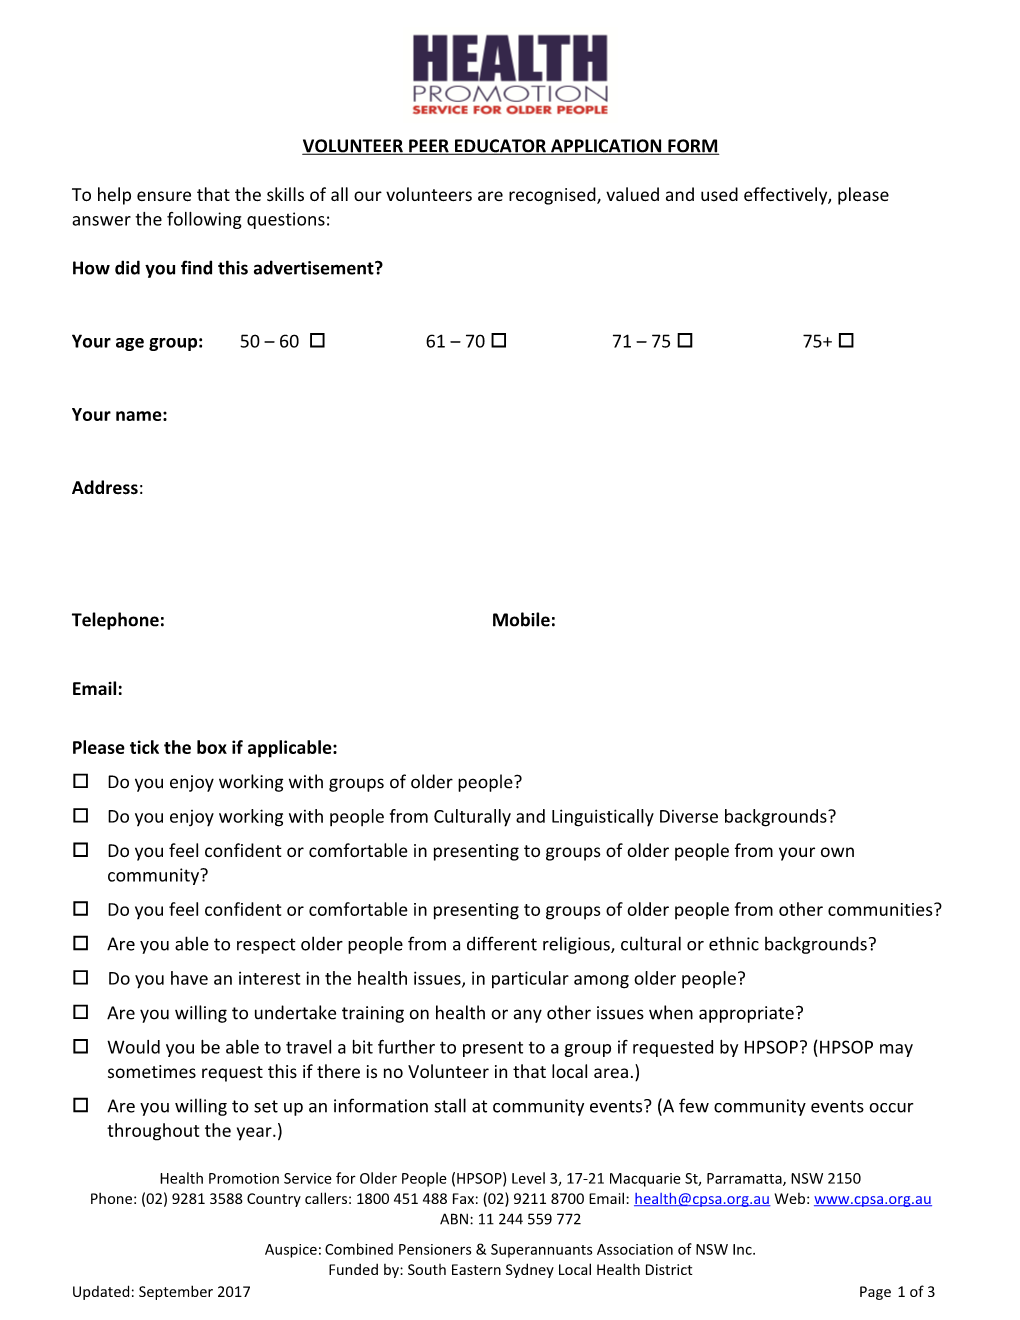 Volunteer Peer Educator Application Form